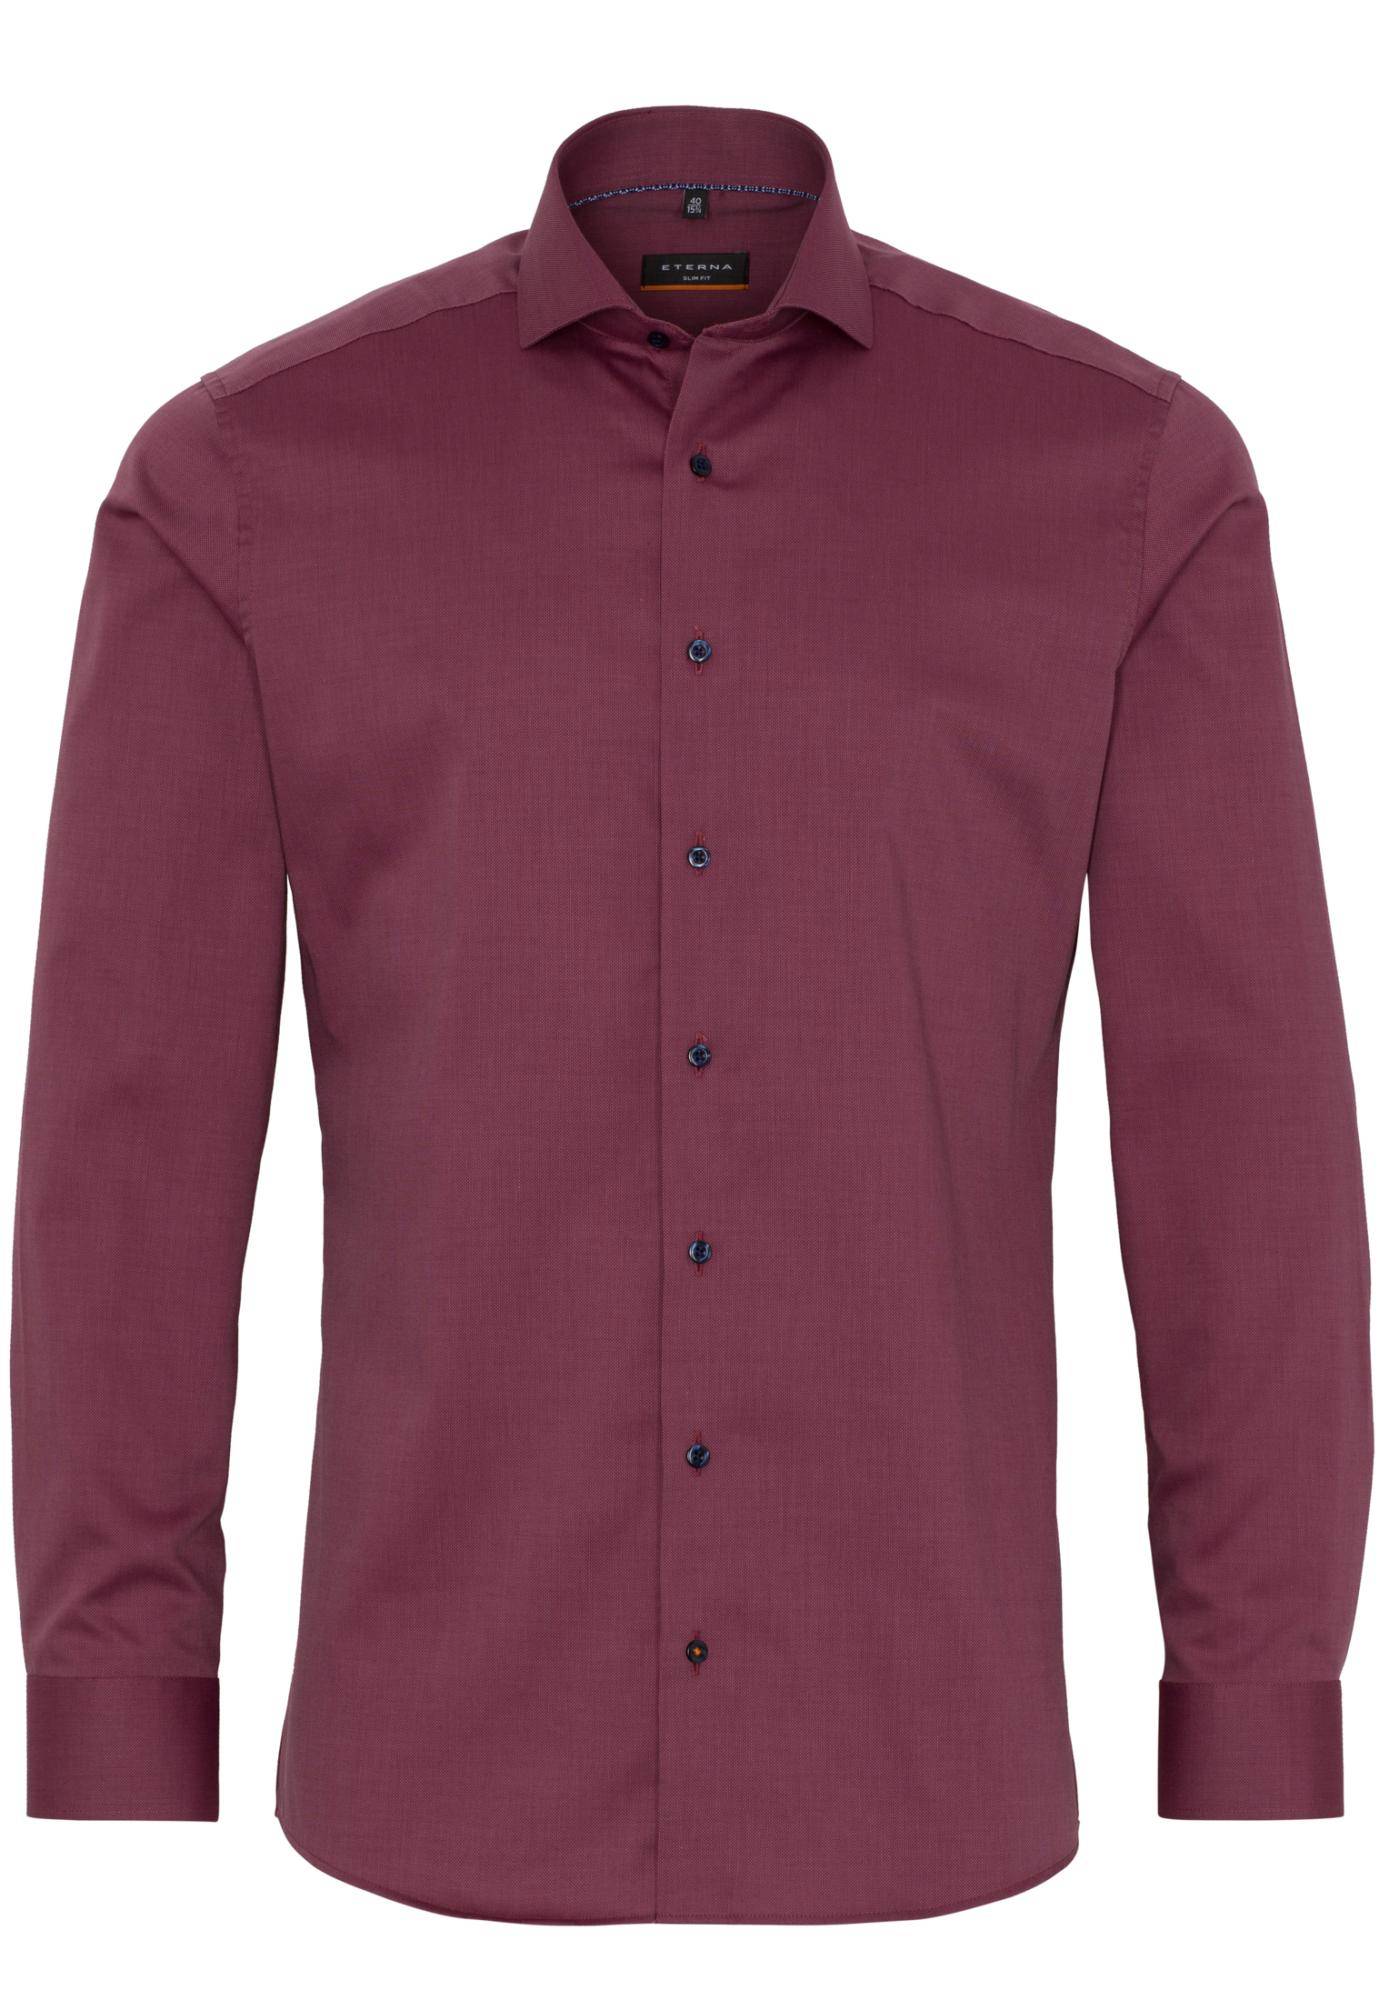 Мужская рубашка ETERNA, бордовая, цвет бордовый, размер 48 - фото 1